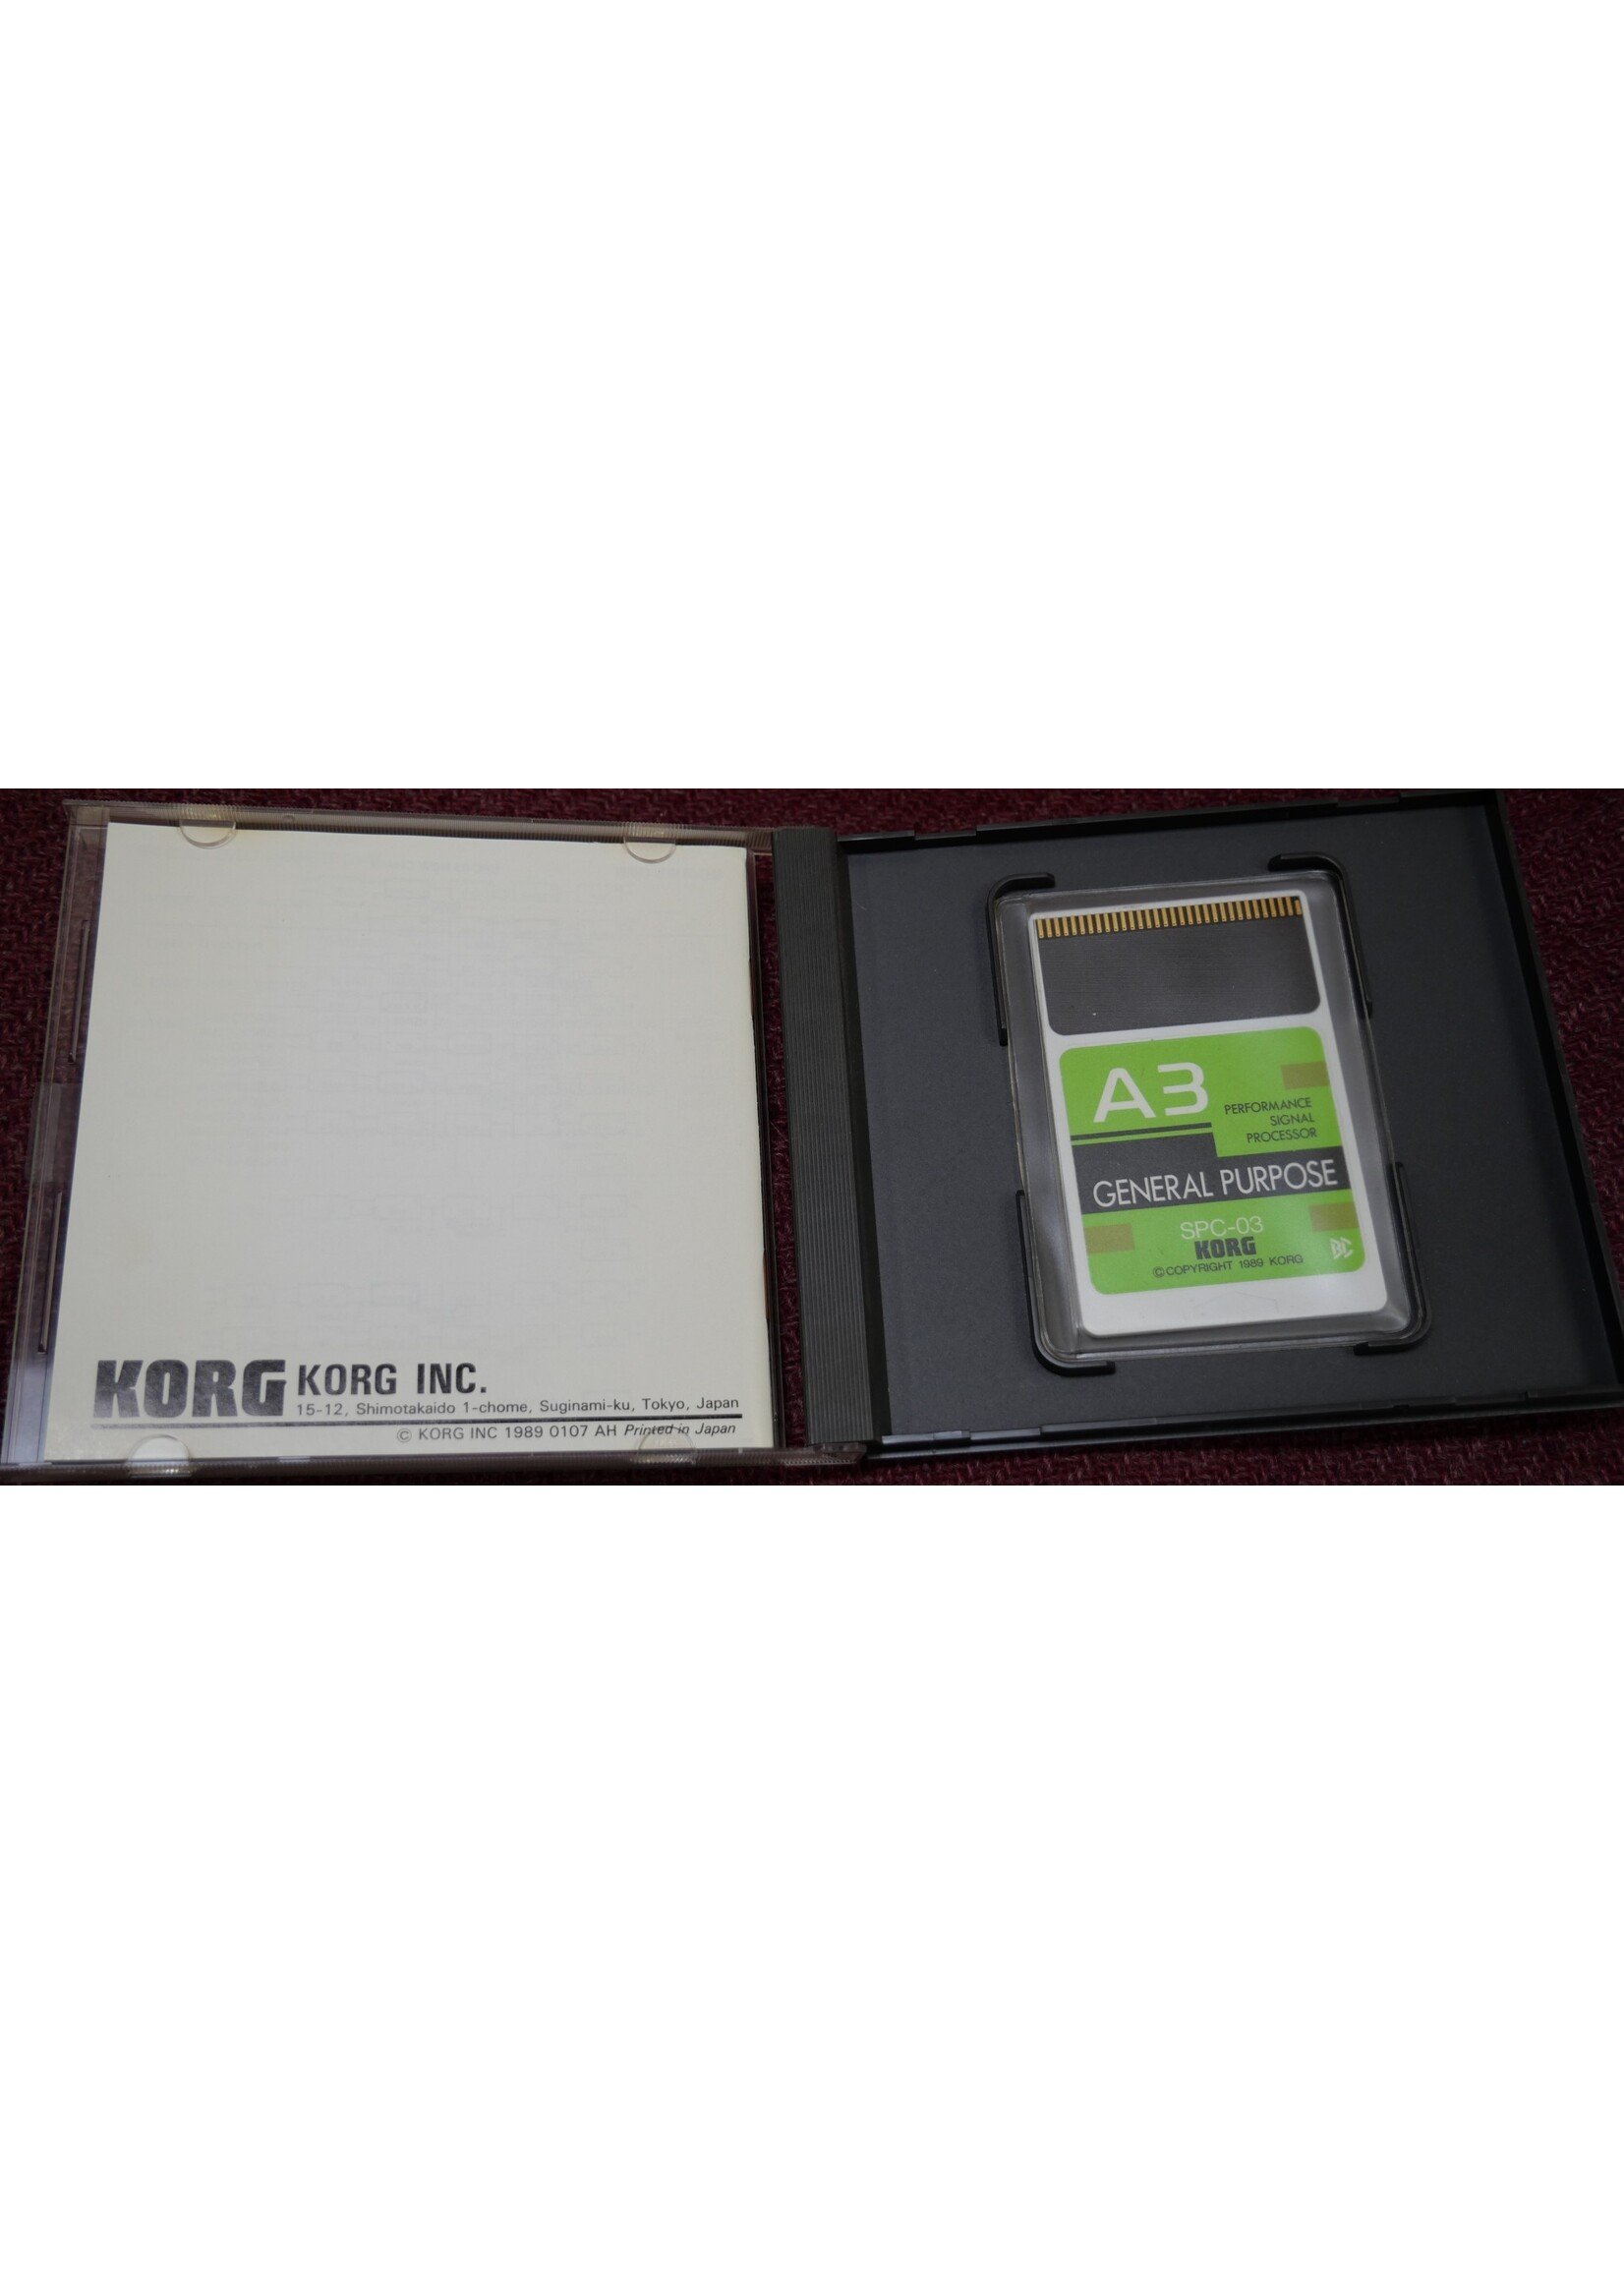 Korg Korg A2 / A3 SPC-03 General Purpose Card - Rare